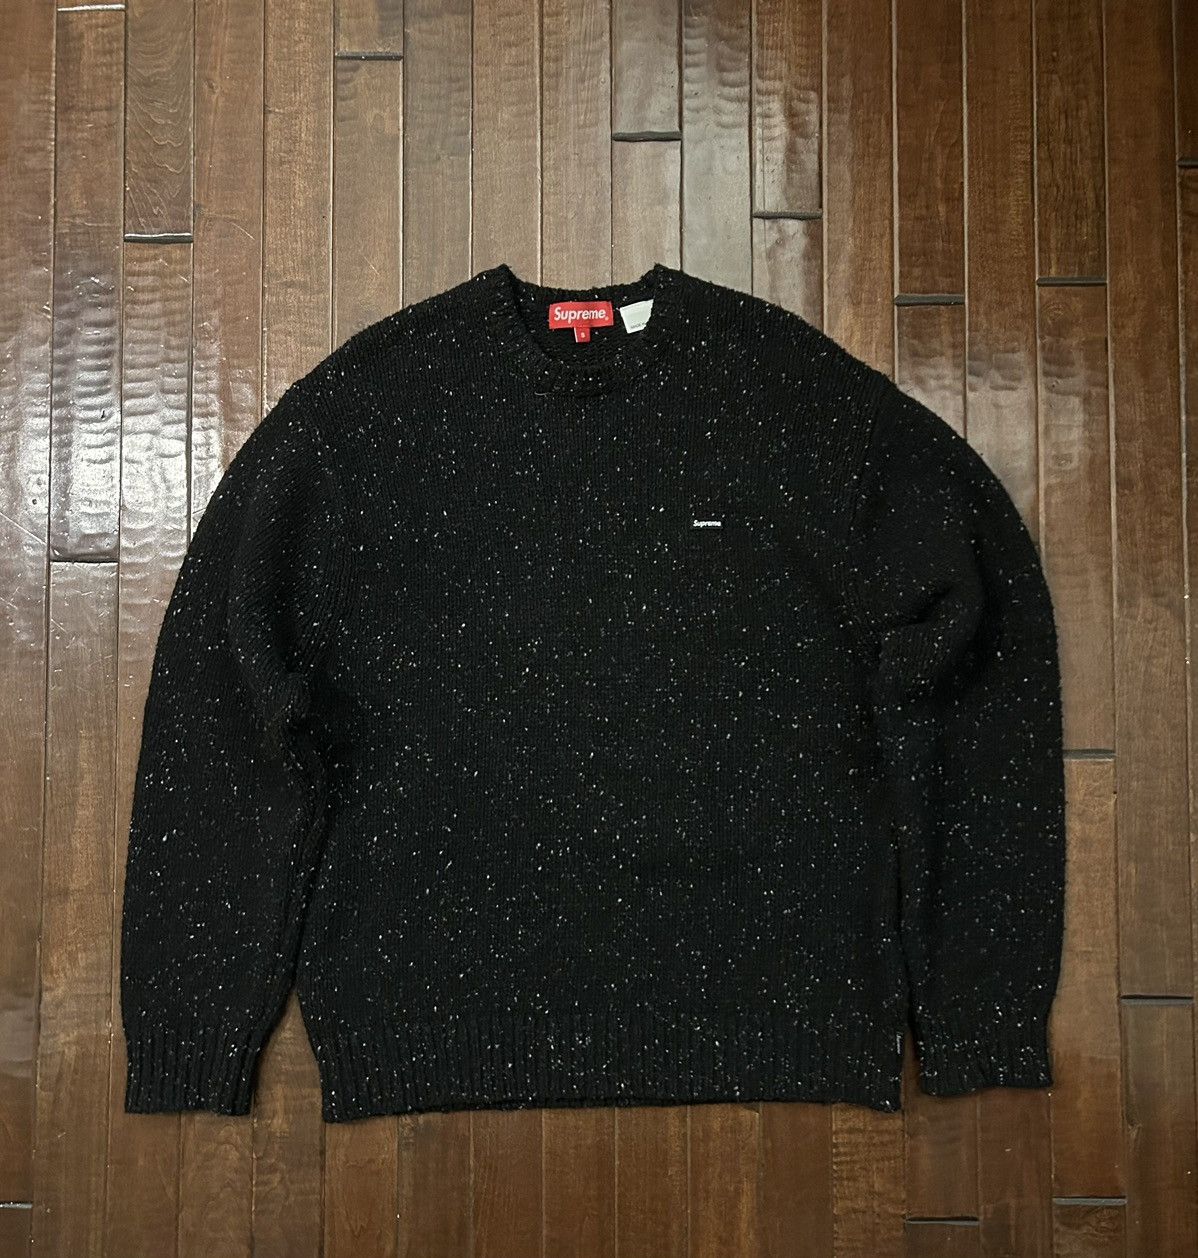 Supreme Supreme Small Box Speckle Sweater | Grailed